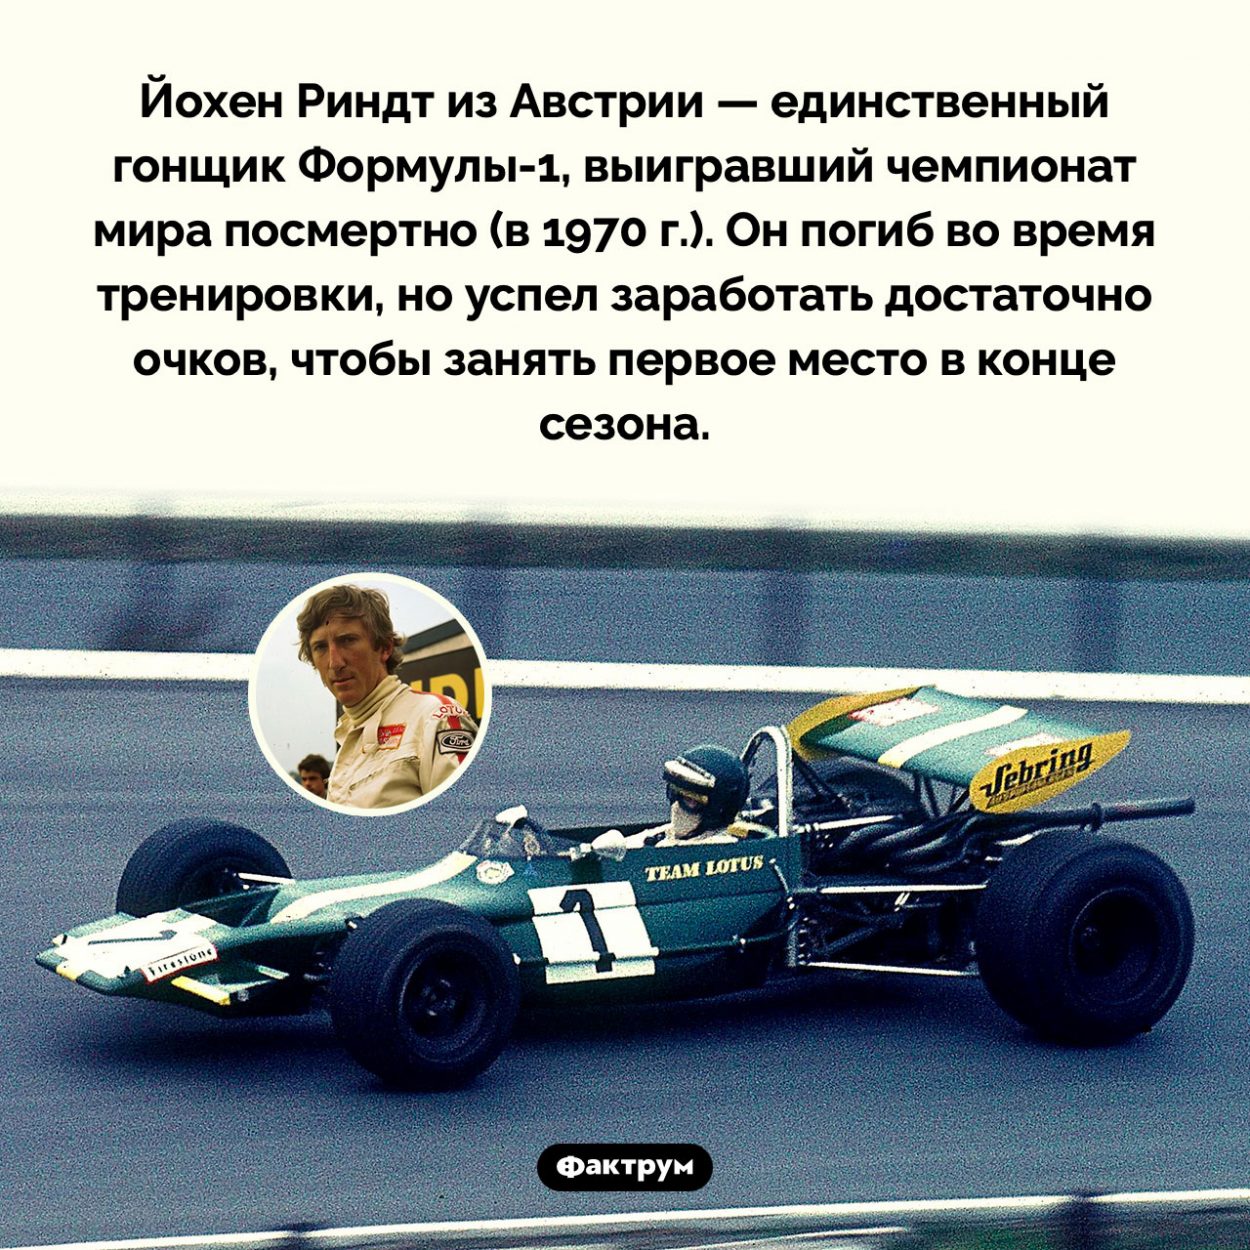 Гонщик, выигравший Формулу-1 посмертно. Йохен Риндт из Австрии — единственный гонщик <nobr>Формулы-1</nobr>, выигравший чемпионат мира посмертно (в 1970 г.). Он погиб во время тренировки, но успел заработать достаточно очков, чтобы занять первое место в конце сезона.